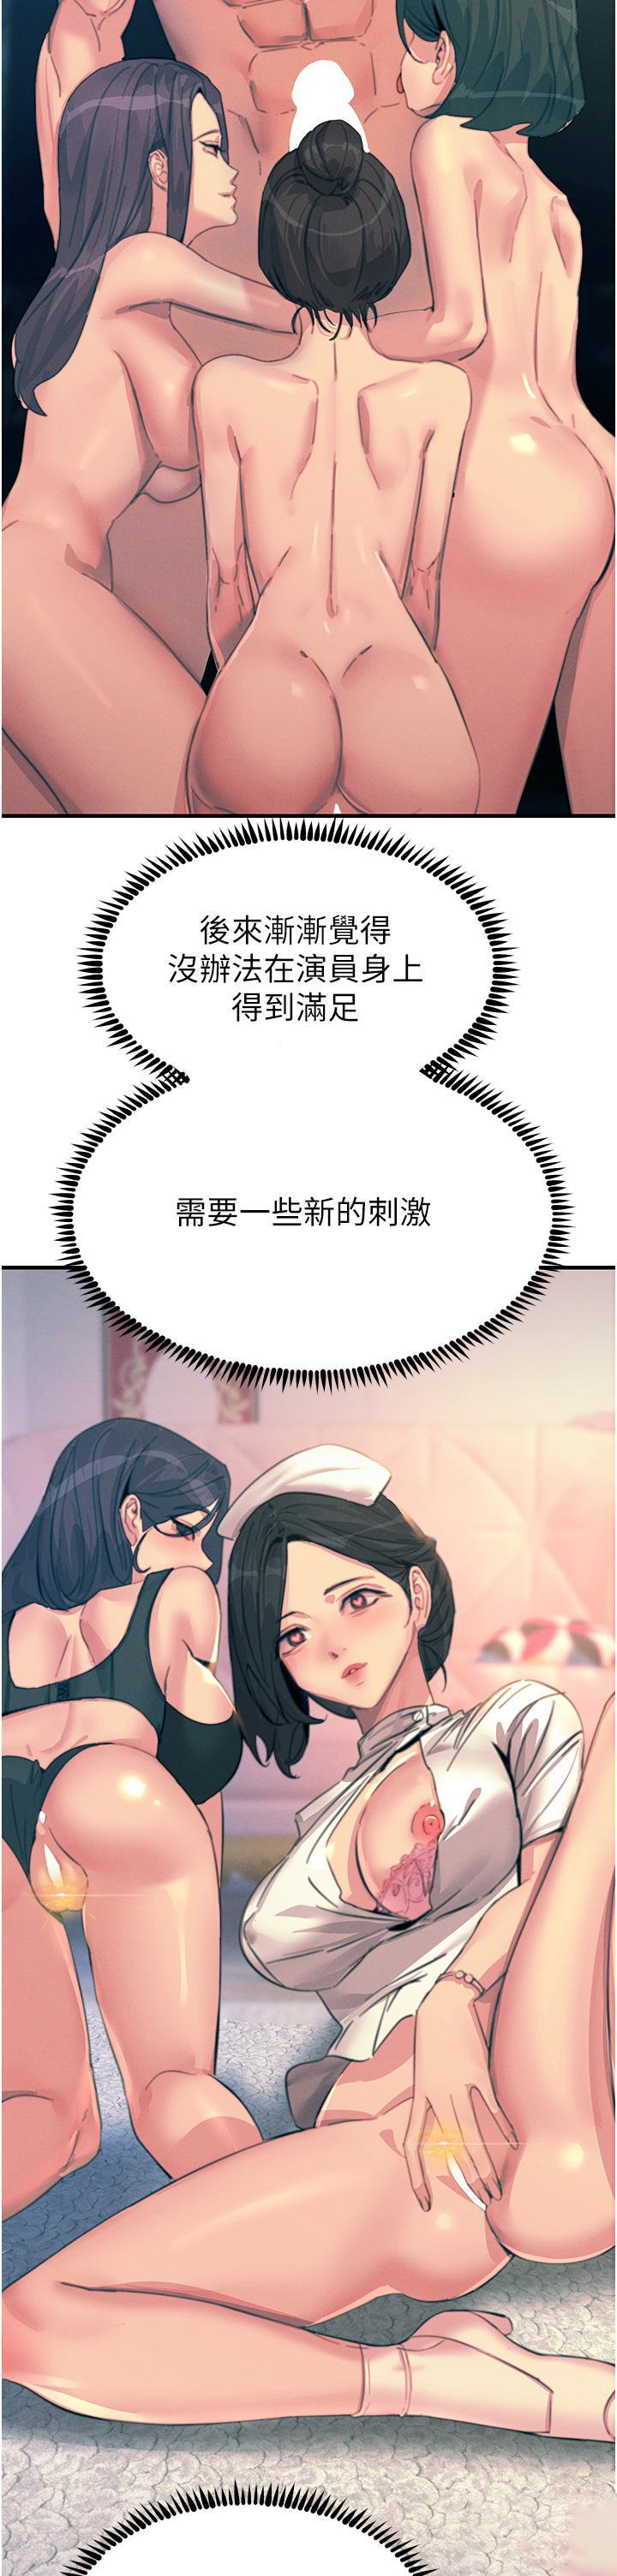 韩国污漫画 觸電大師 第67话 欲女的开苞仪式 7